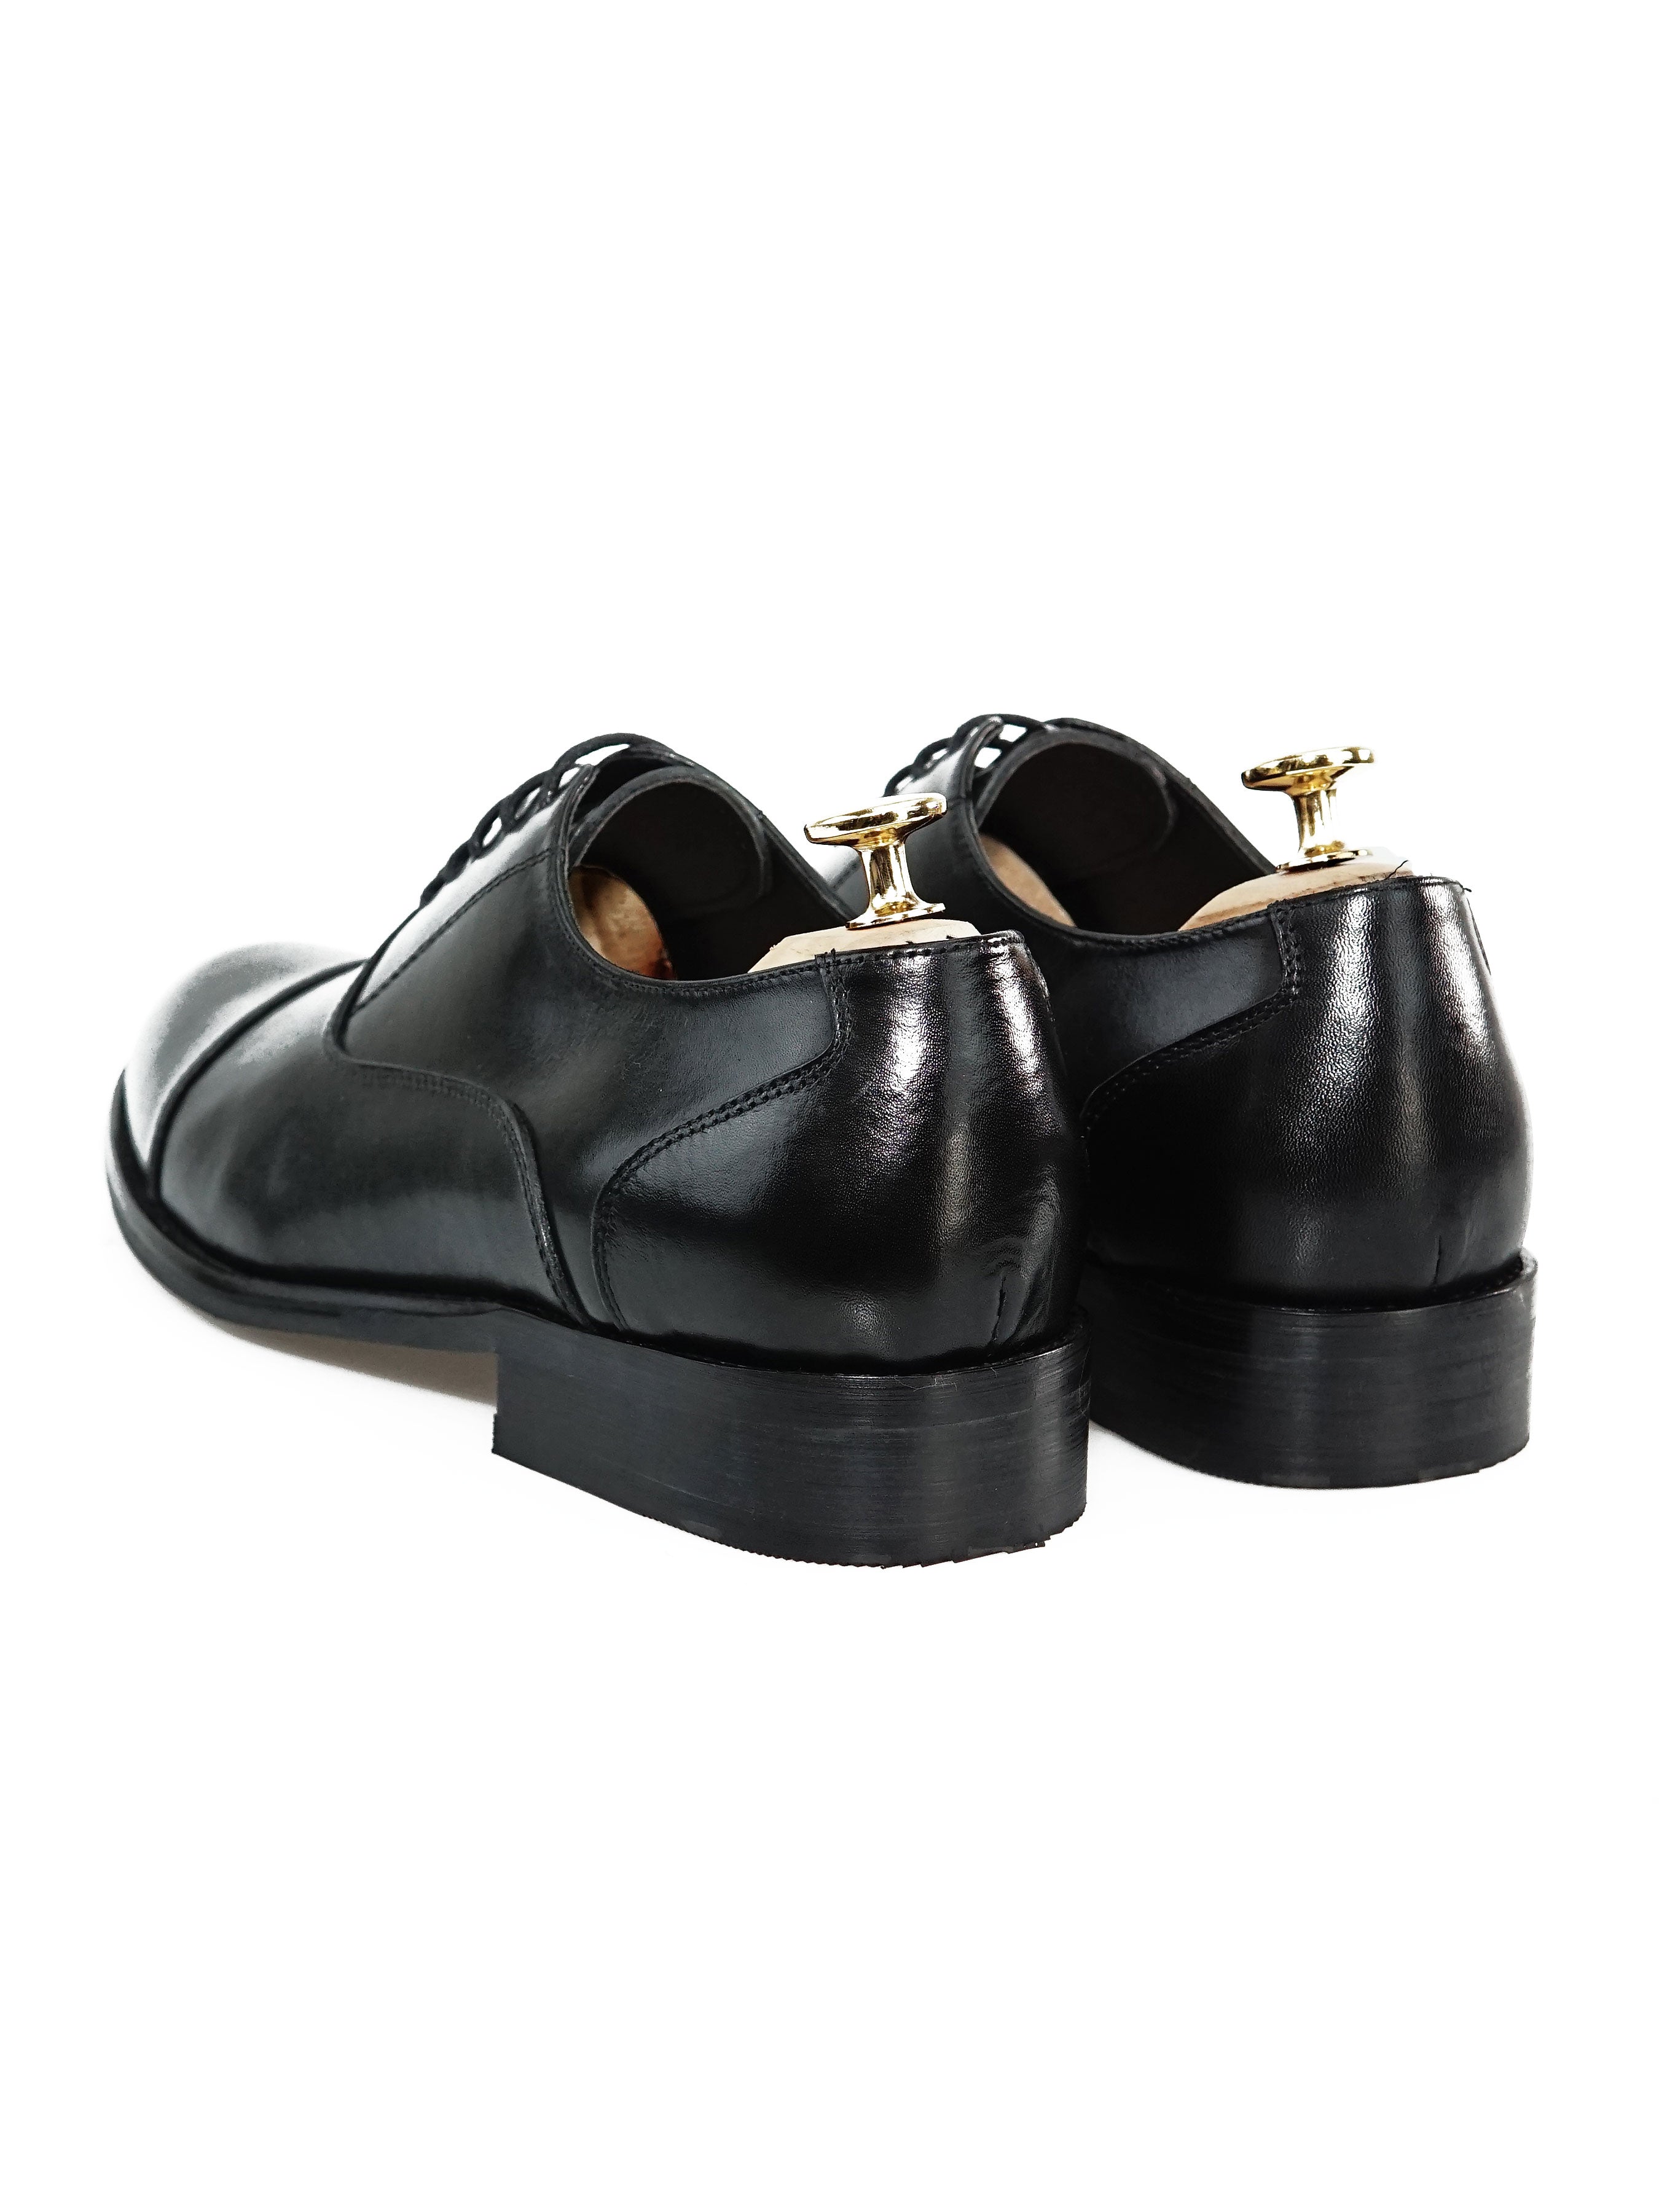 Oxford Cap Toe - Black Lace Up - Zeve Shoes